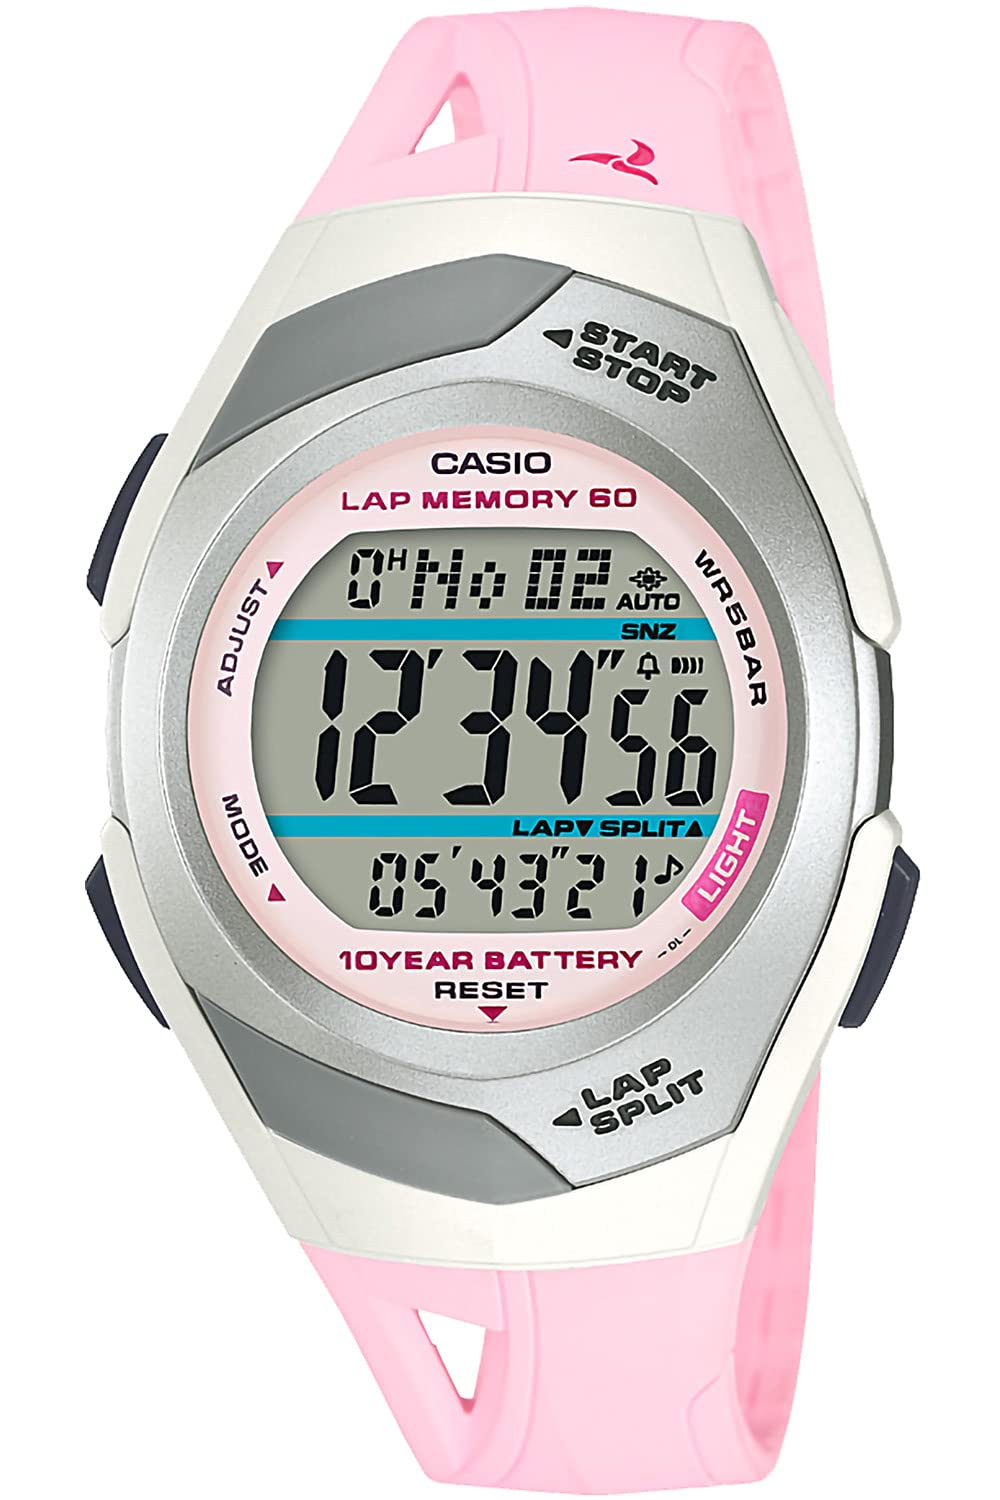 Casio STR-300 Series Watch Casio Collection Sports Running